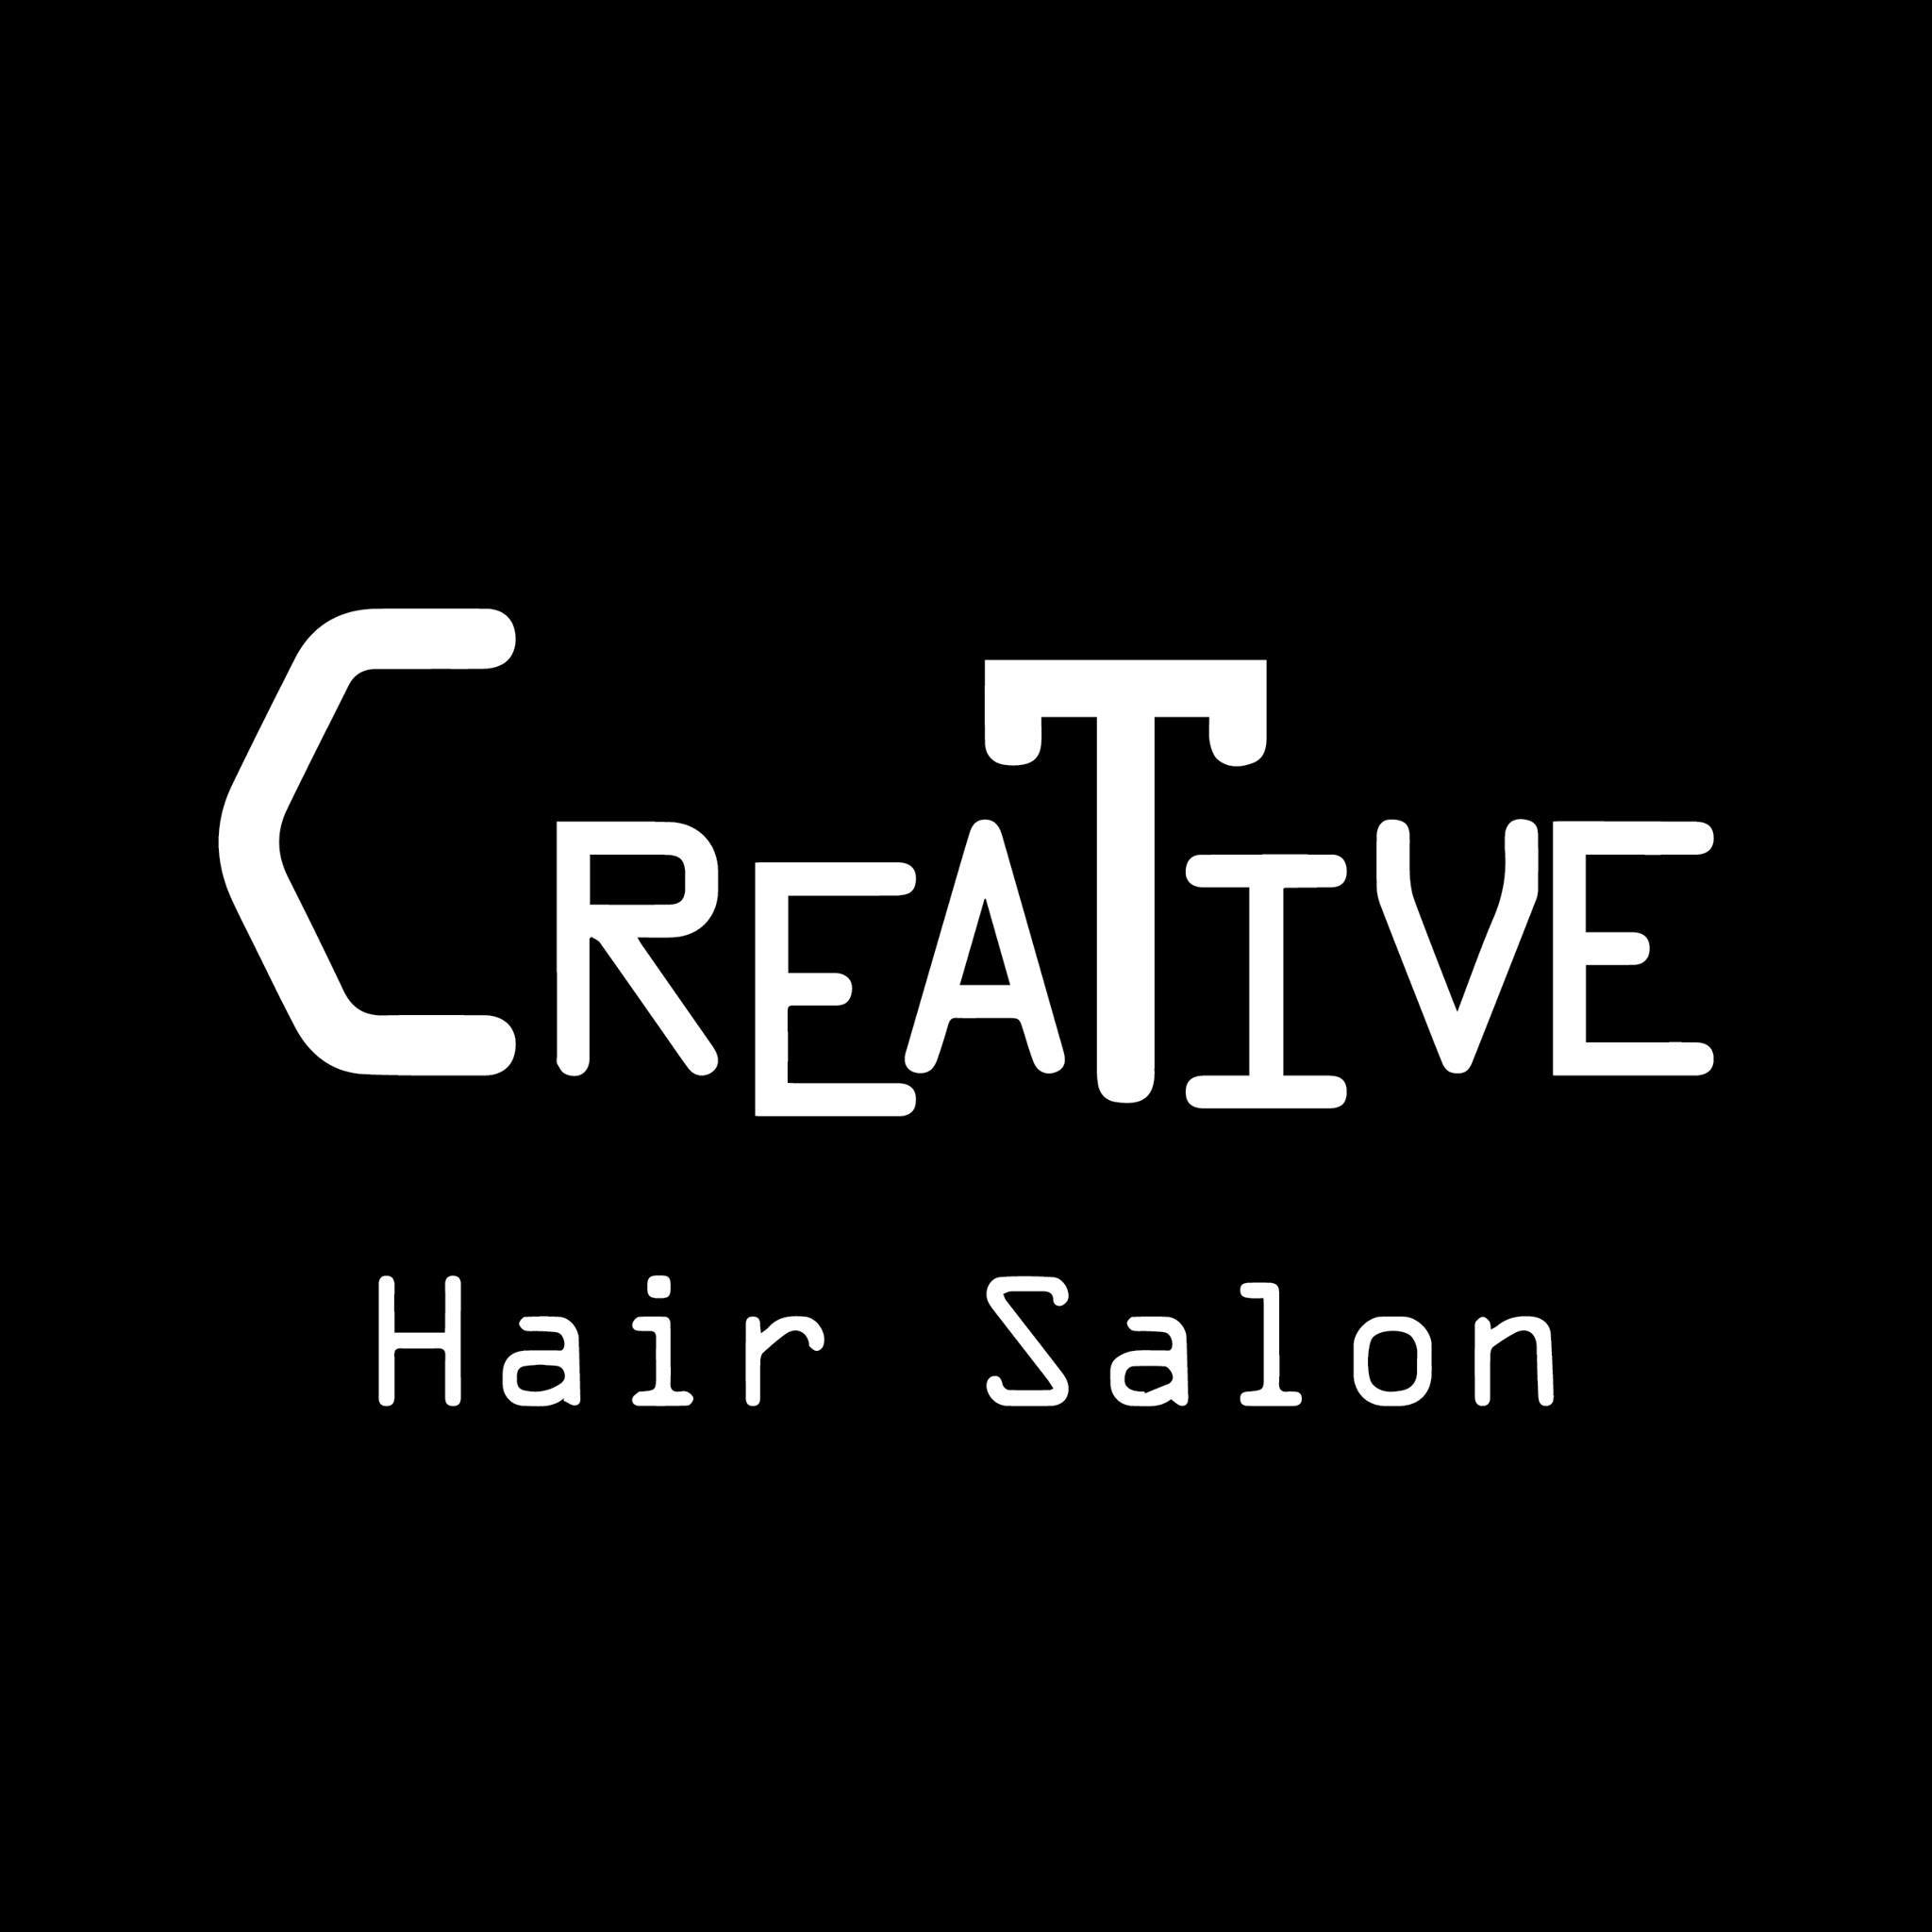 髮型屋: Creative Hair Salon